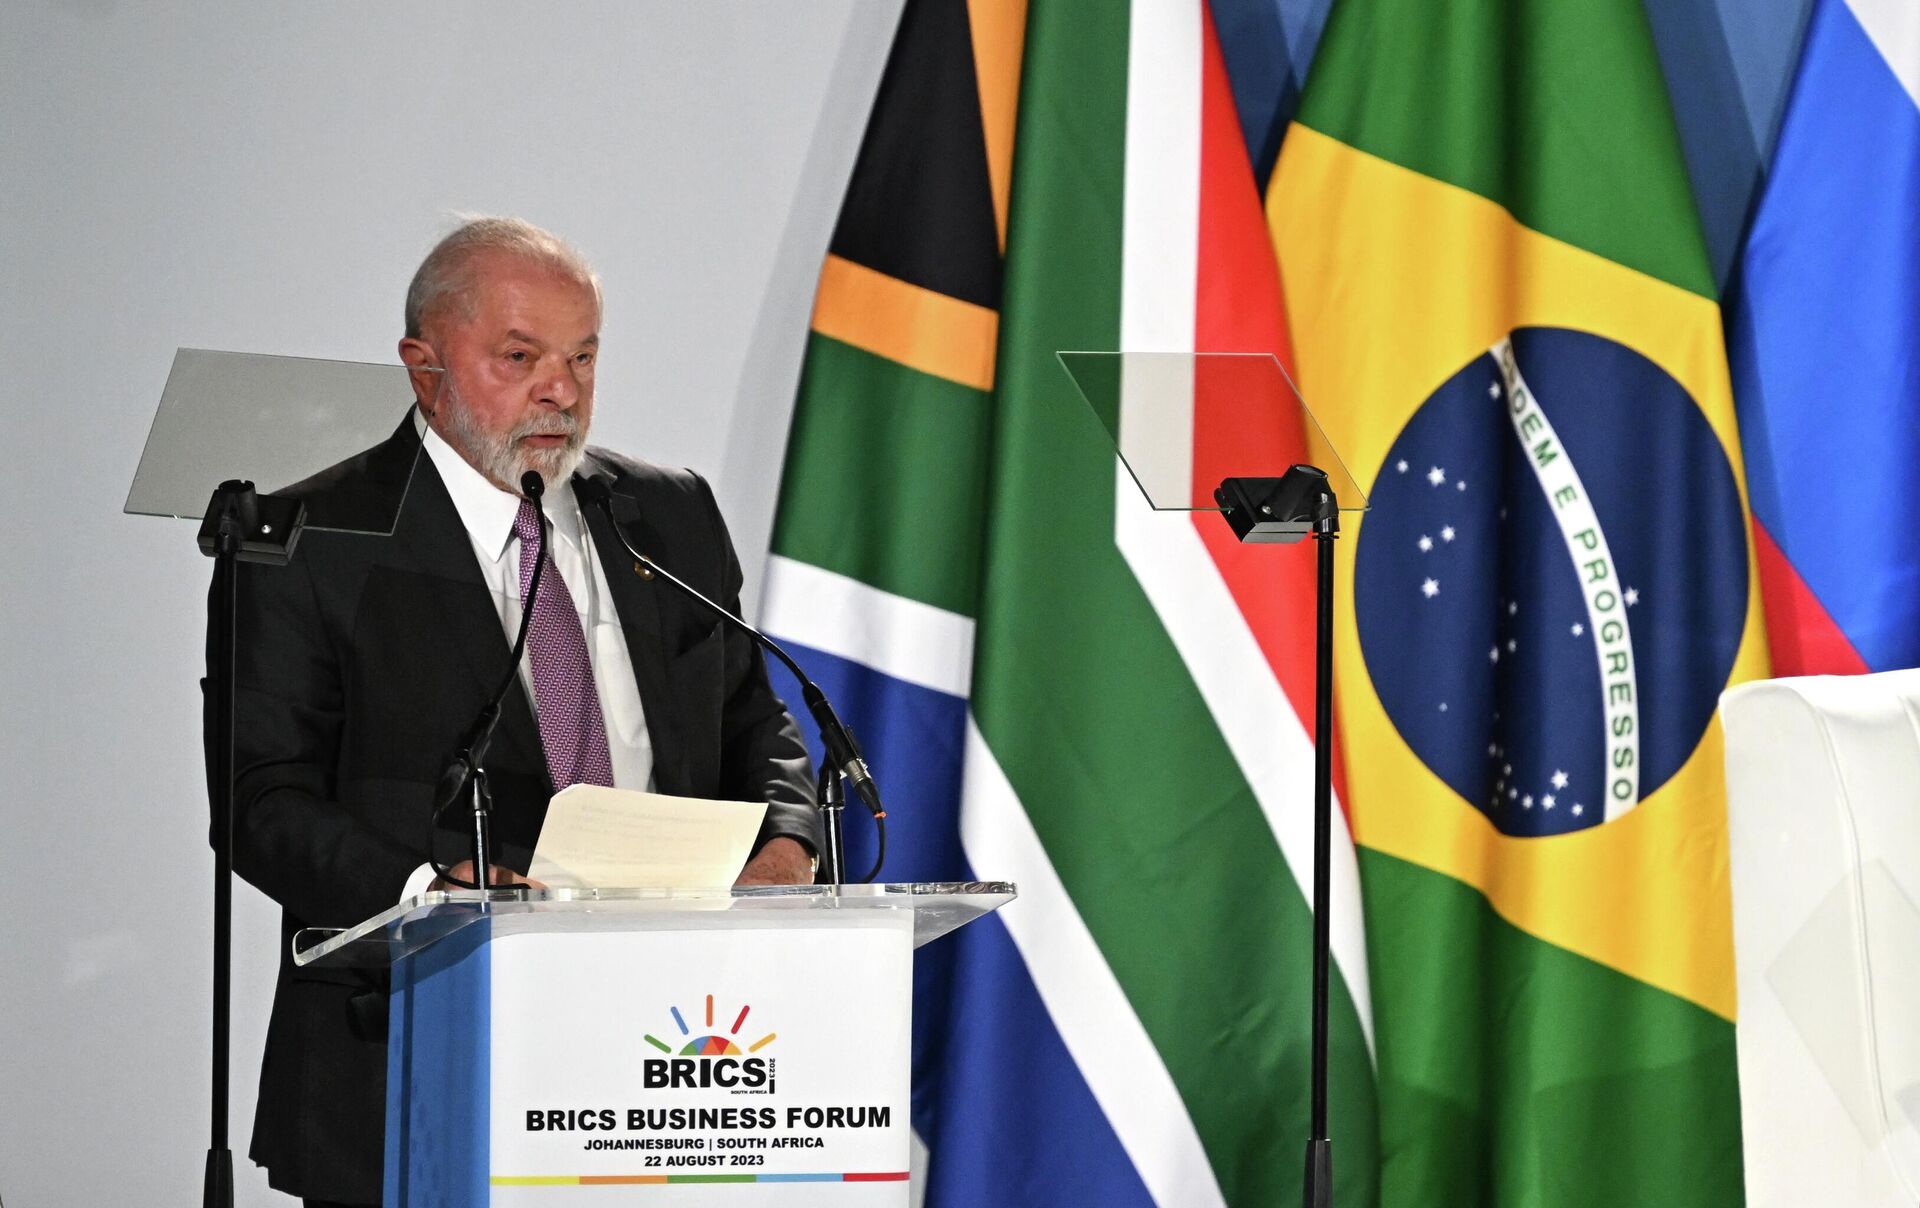 O presidente brasileiro, Luiz Inácio Lula da Silva, discursa na 15ª Cúpula do BRICS em Joanesburgo, África do Sul - Sputnik Brasil, 1920, 22.08.2023